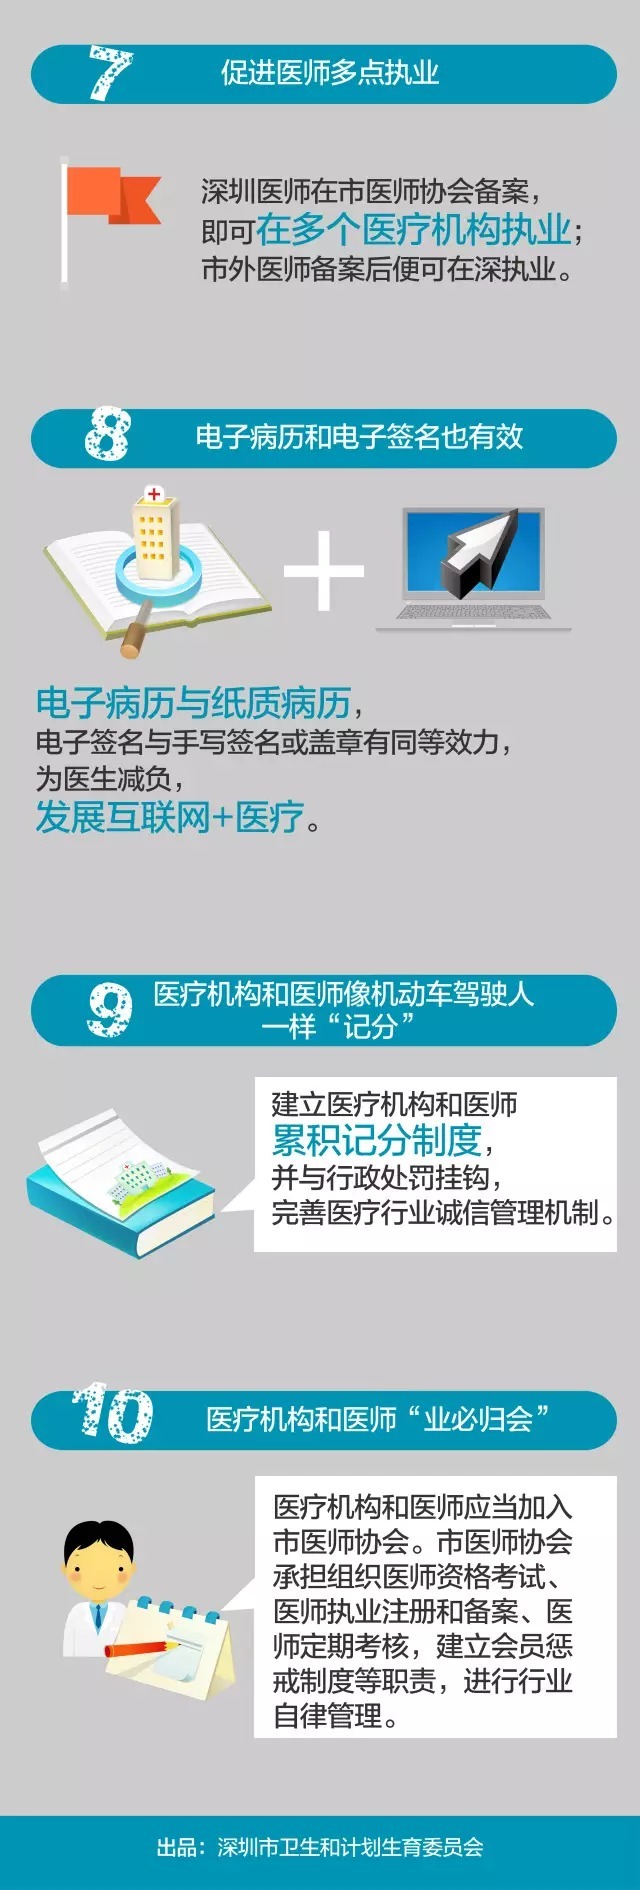 深圳医改有了「基本法」护航 ：一图读懂十大亮点